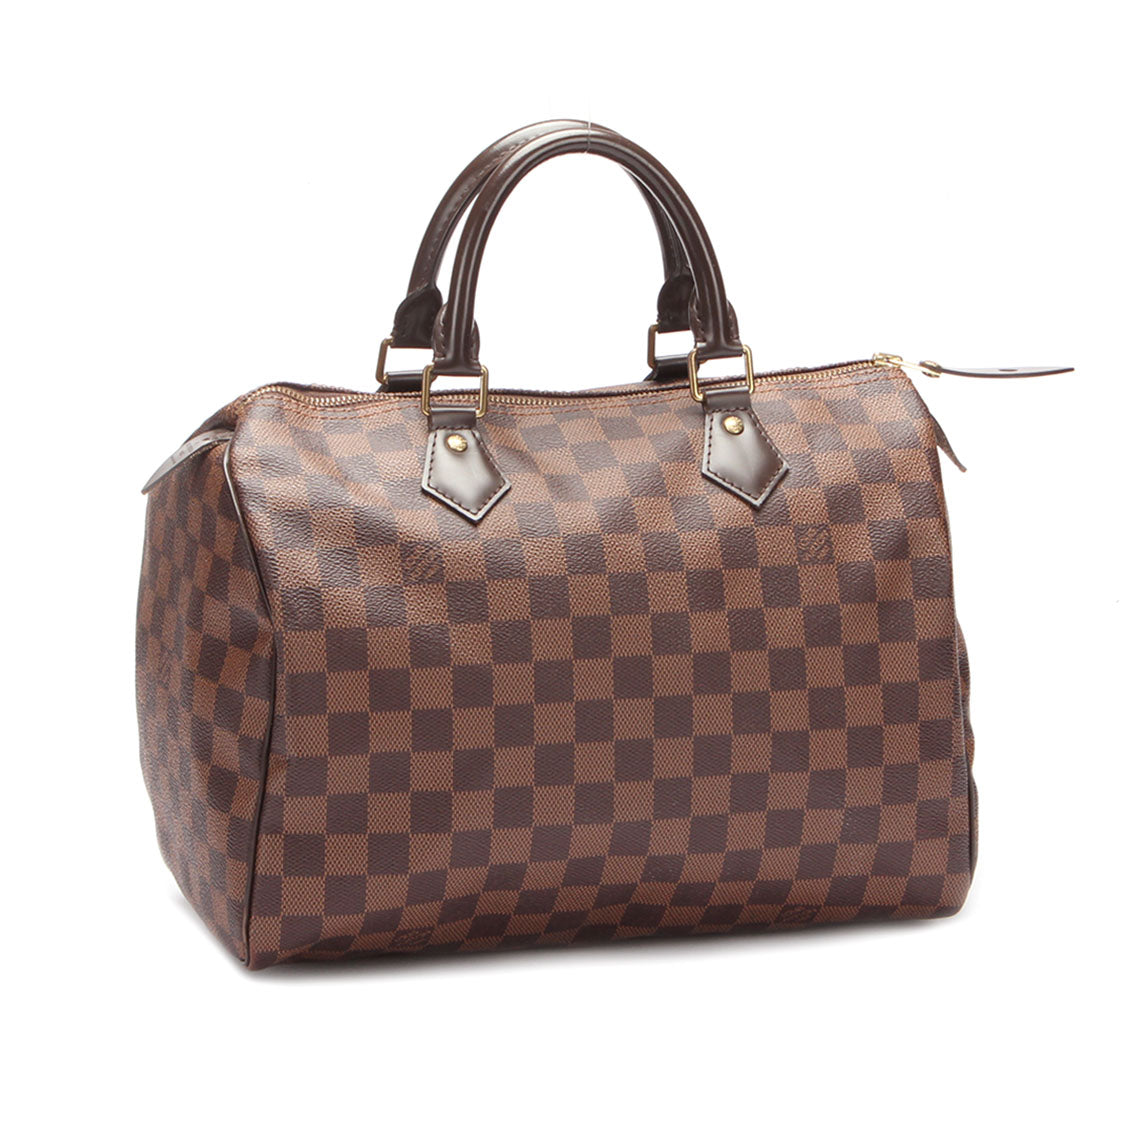 Louis Vuitton Damier Ebene Speedy 30 Canvas Handbag in Good condition